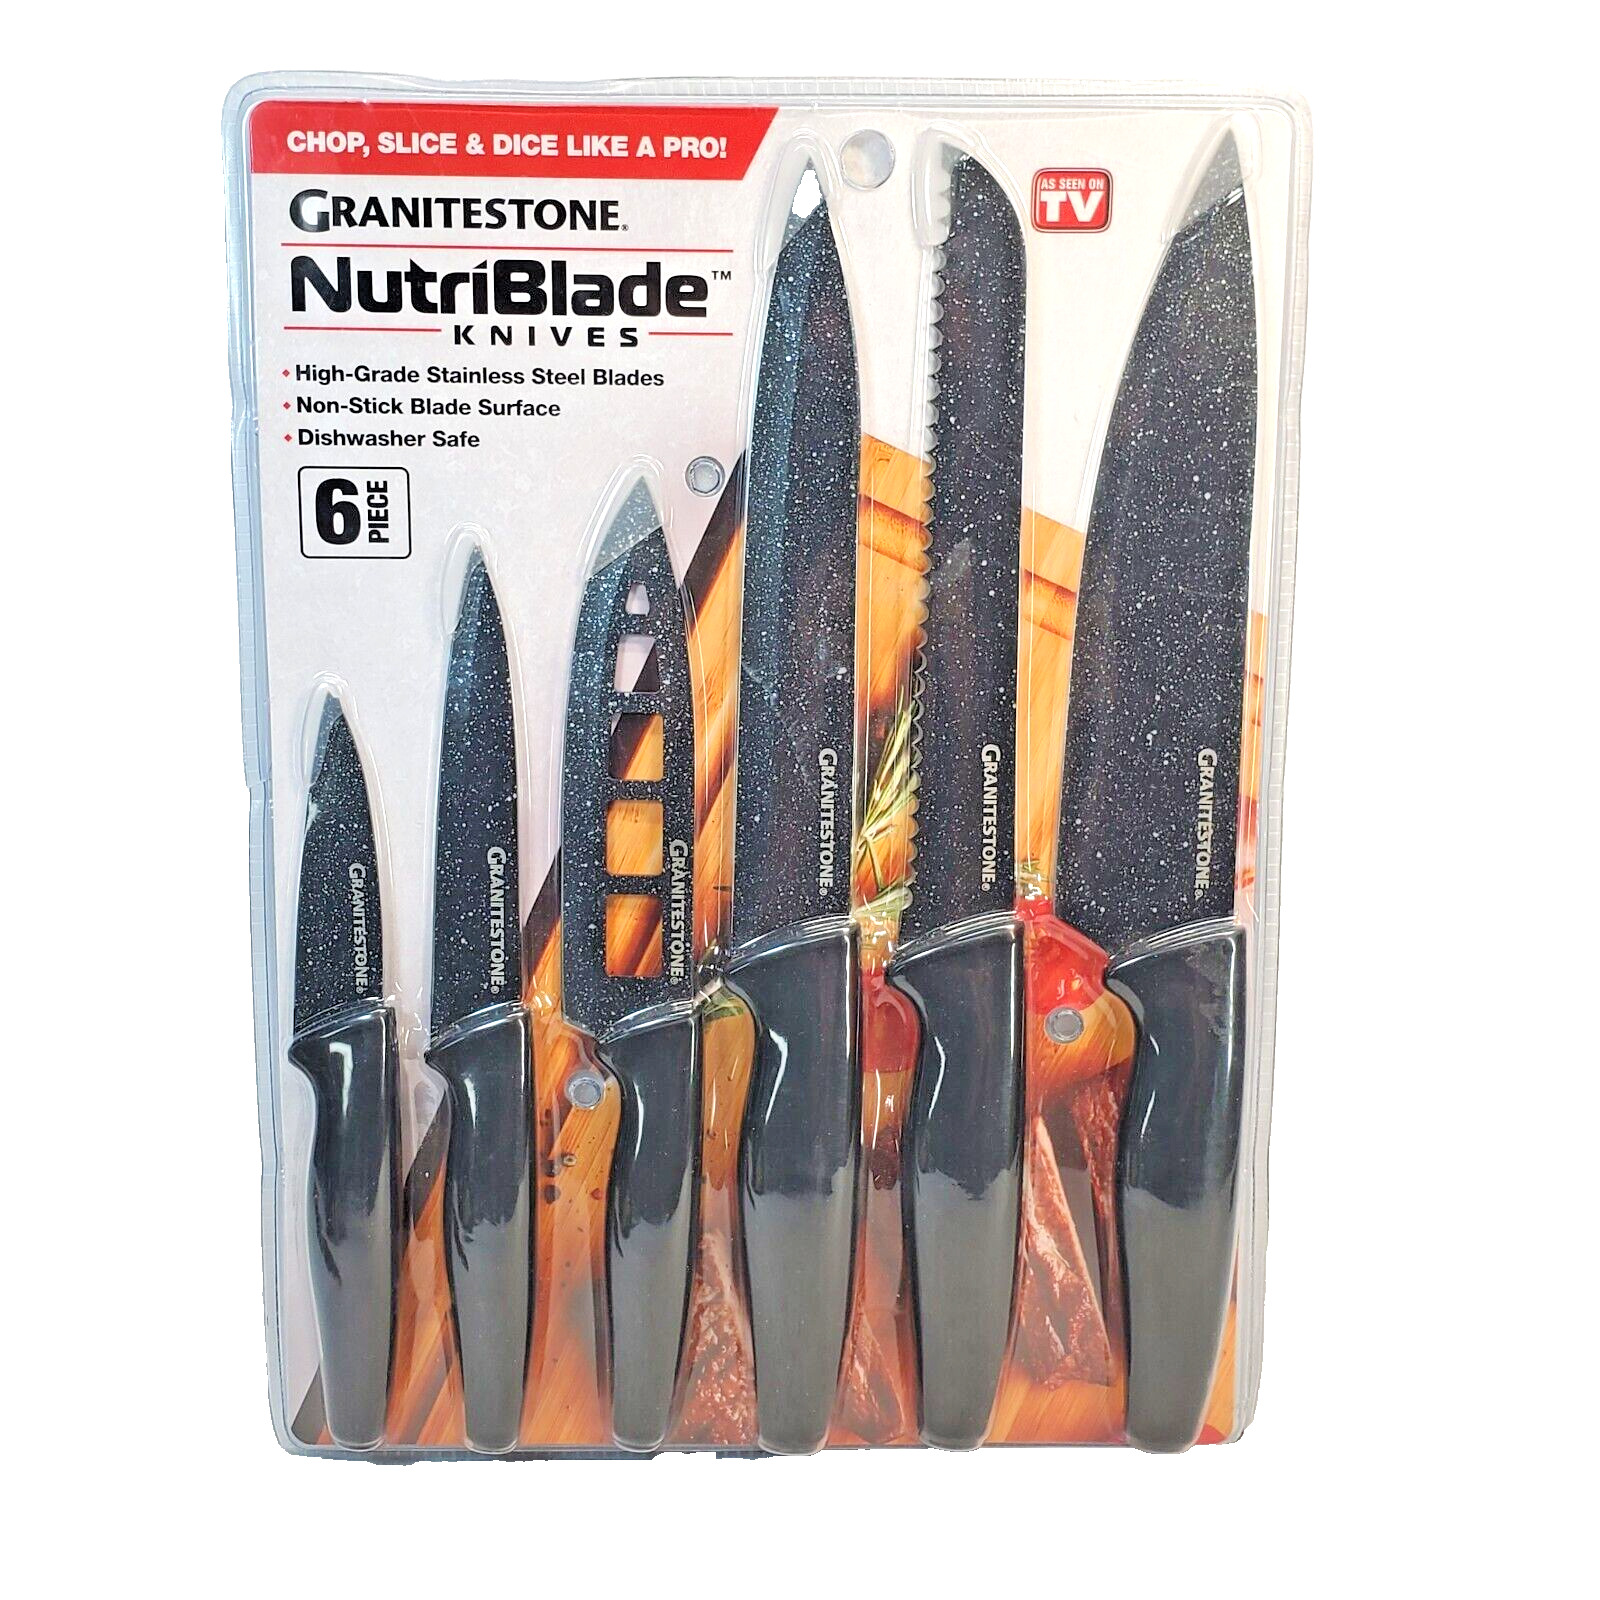 Granitestone NutriBlade 6 Piece Kitchen Knife Set Stainless Steel Blades - BLACK